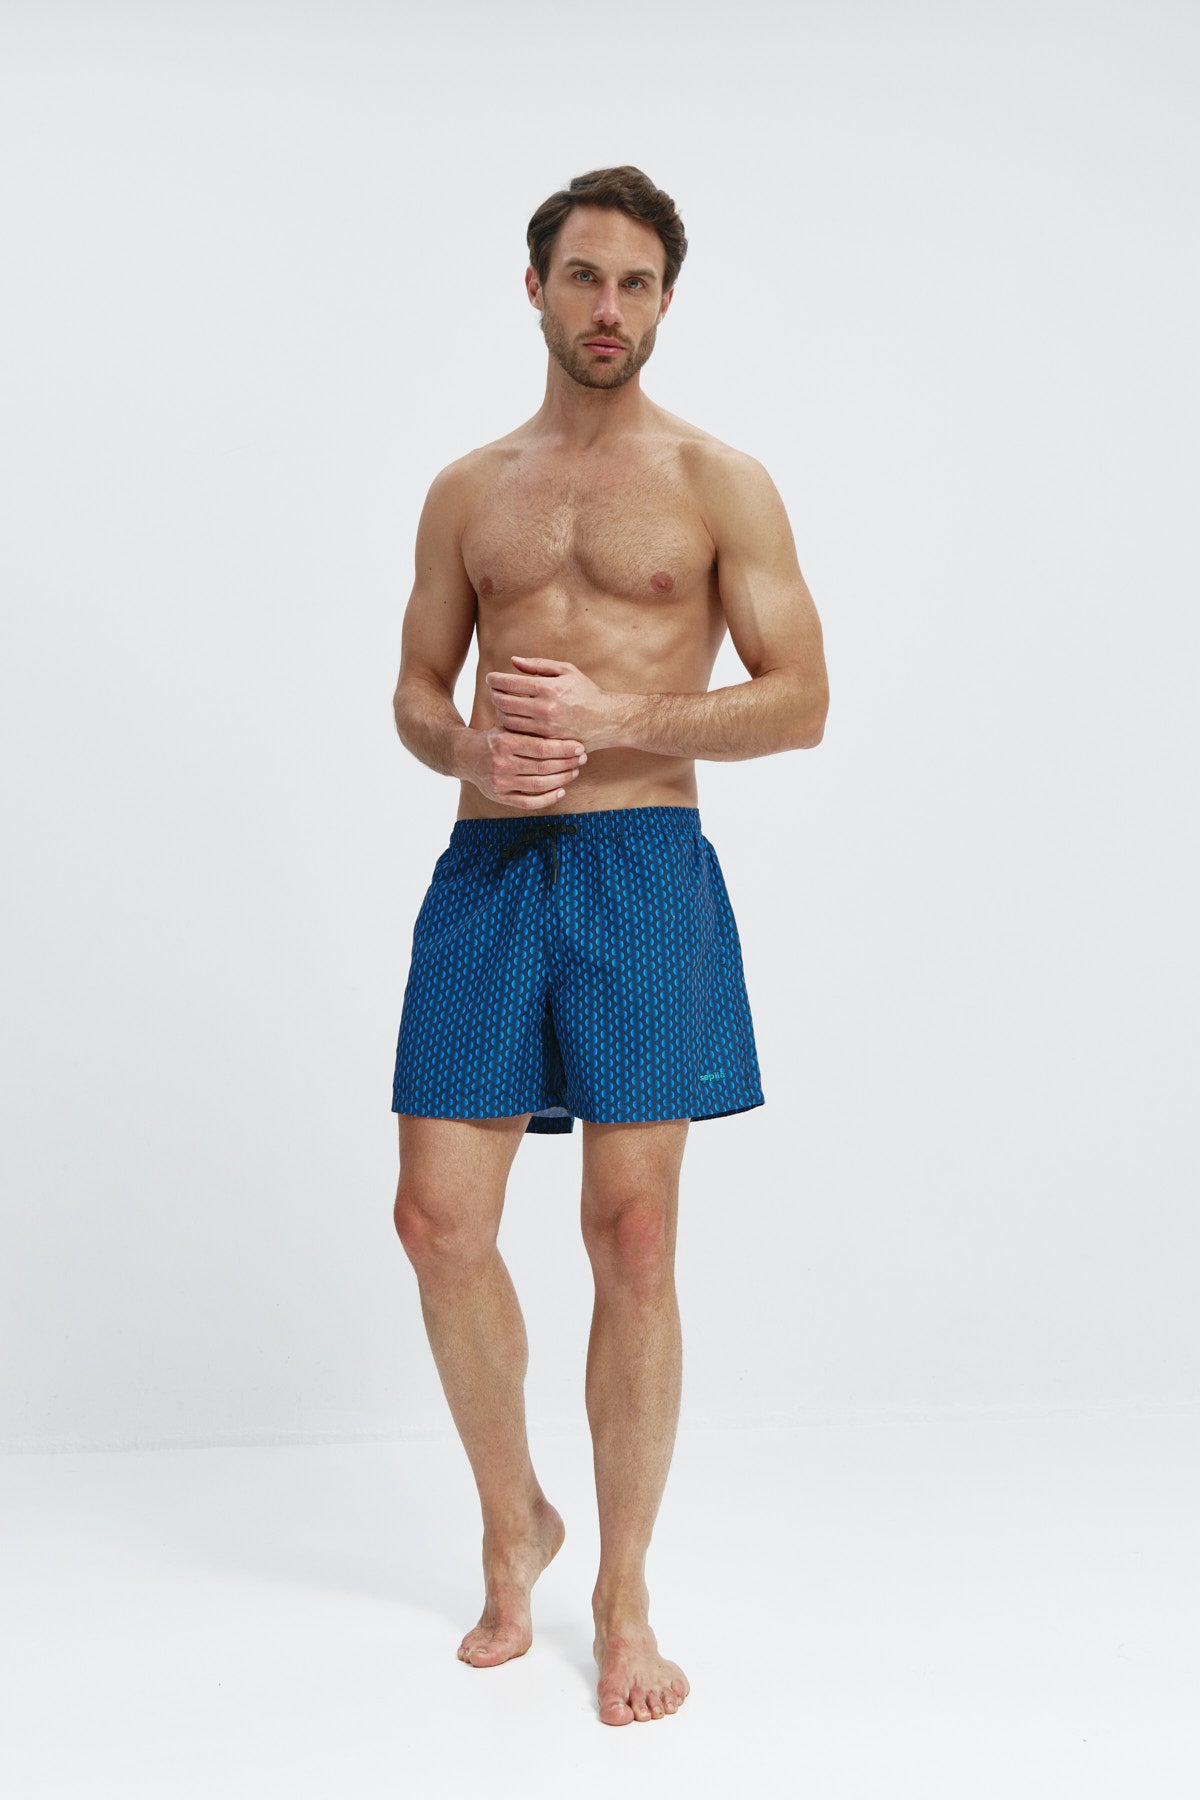 Bañador de hombre con estampado aleta,secado rápido, protección UV50+, ligero, resistente y cómodo. Foto cuerpo entero